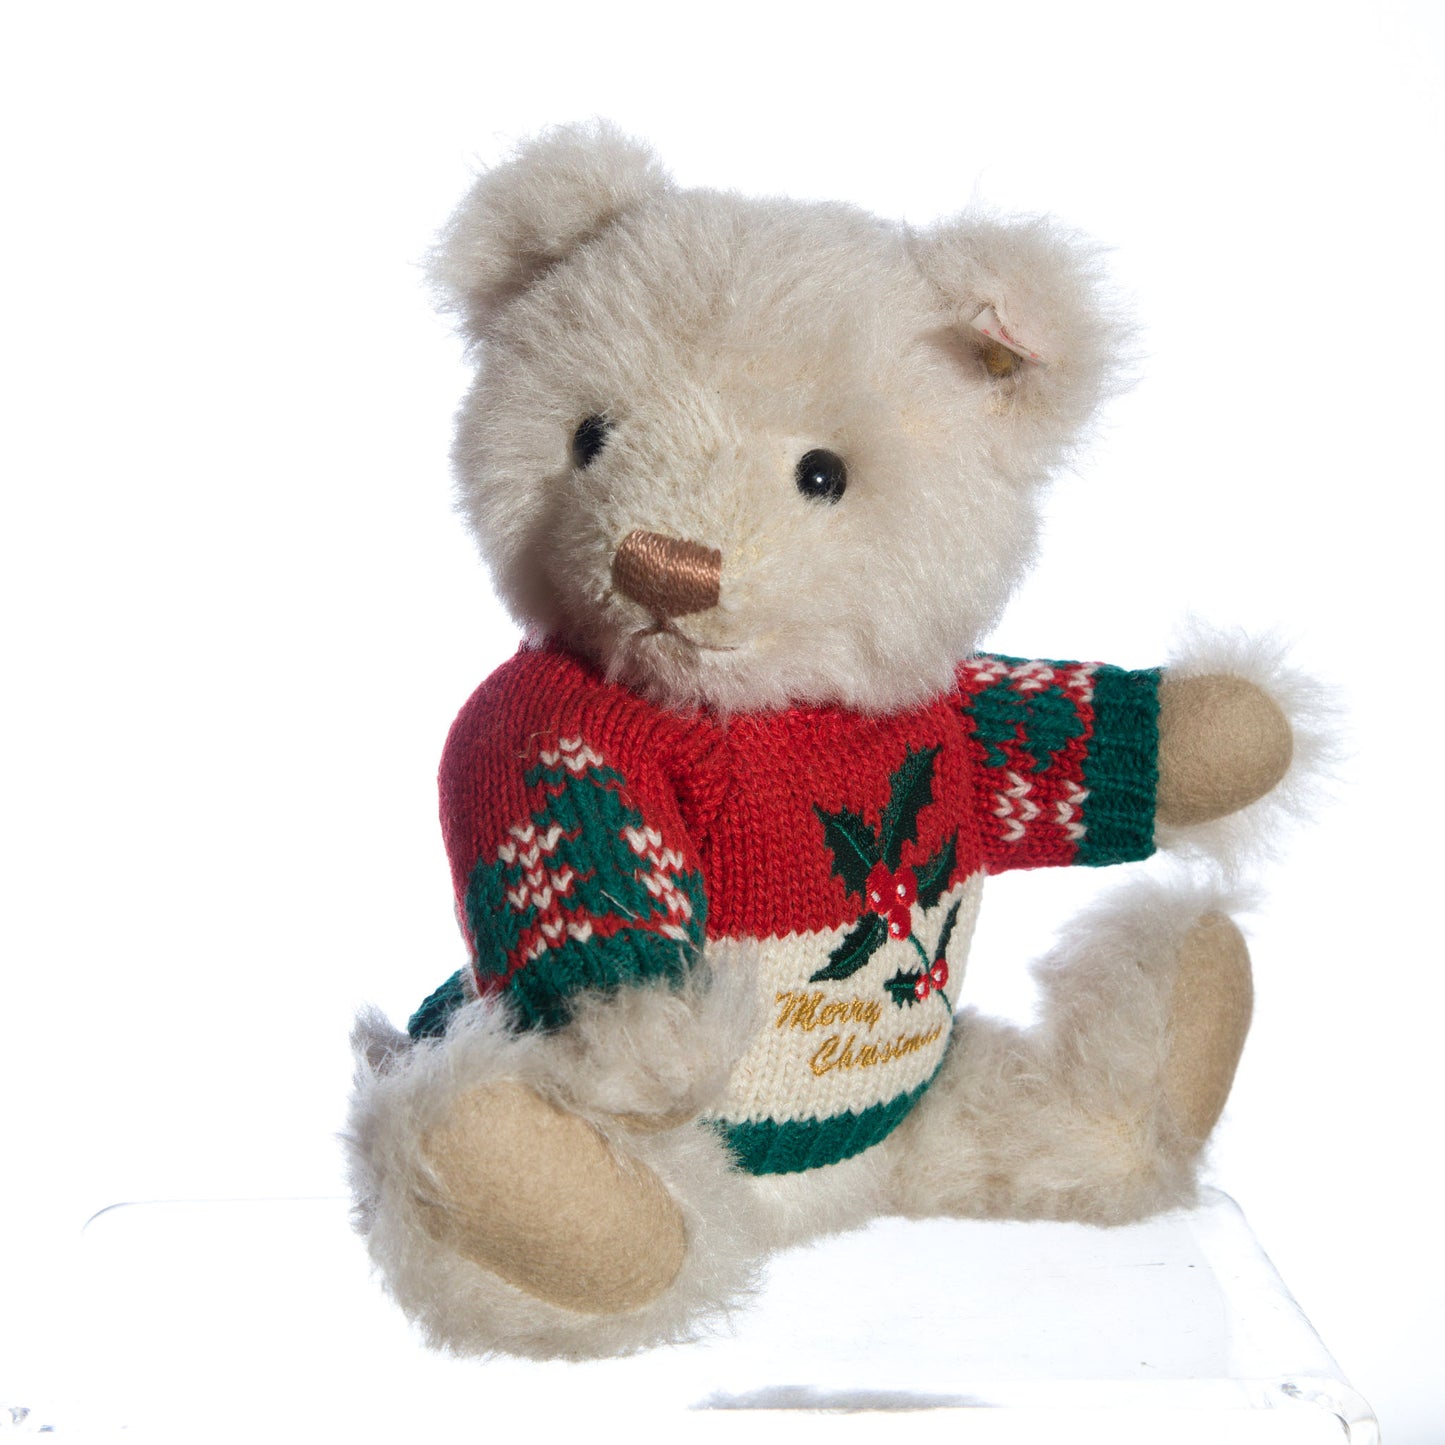 Steiff Christmas 2009 teddy bear